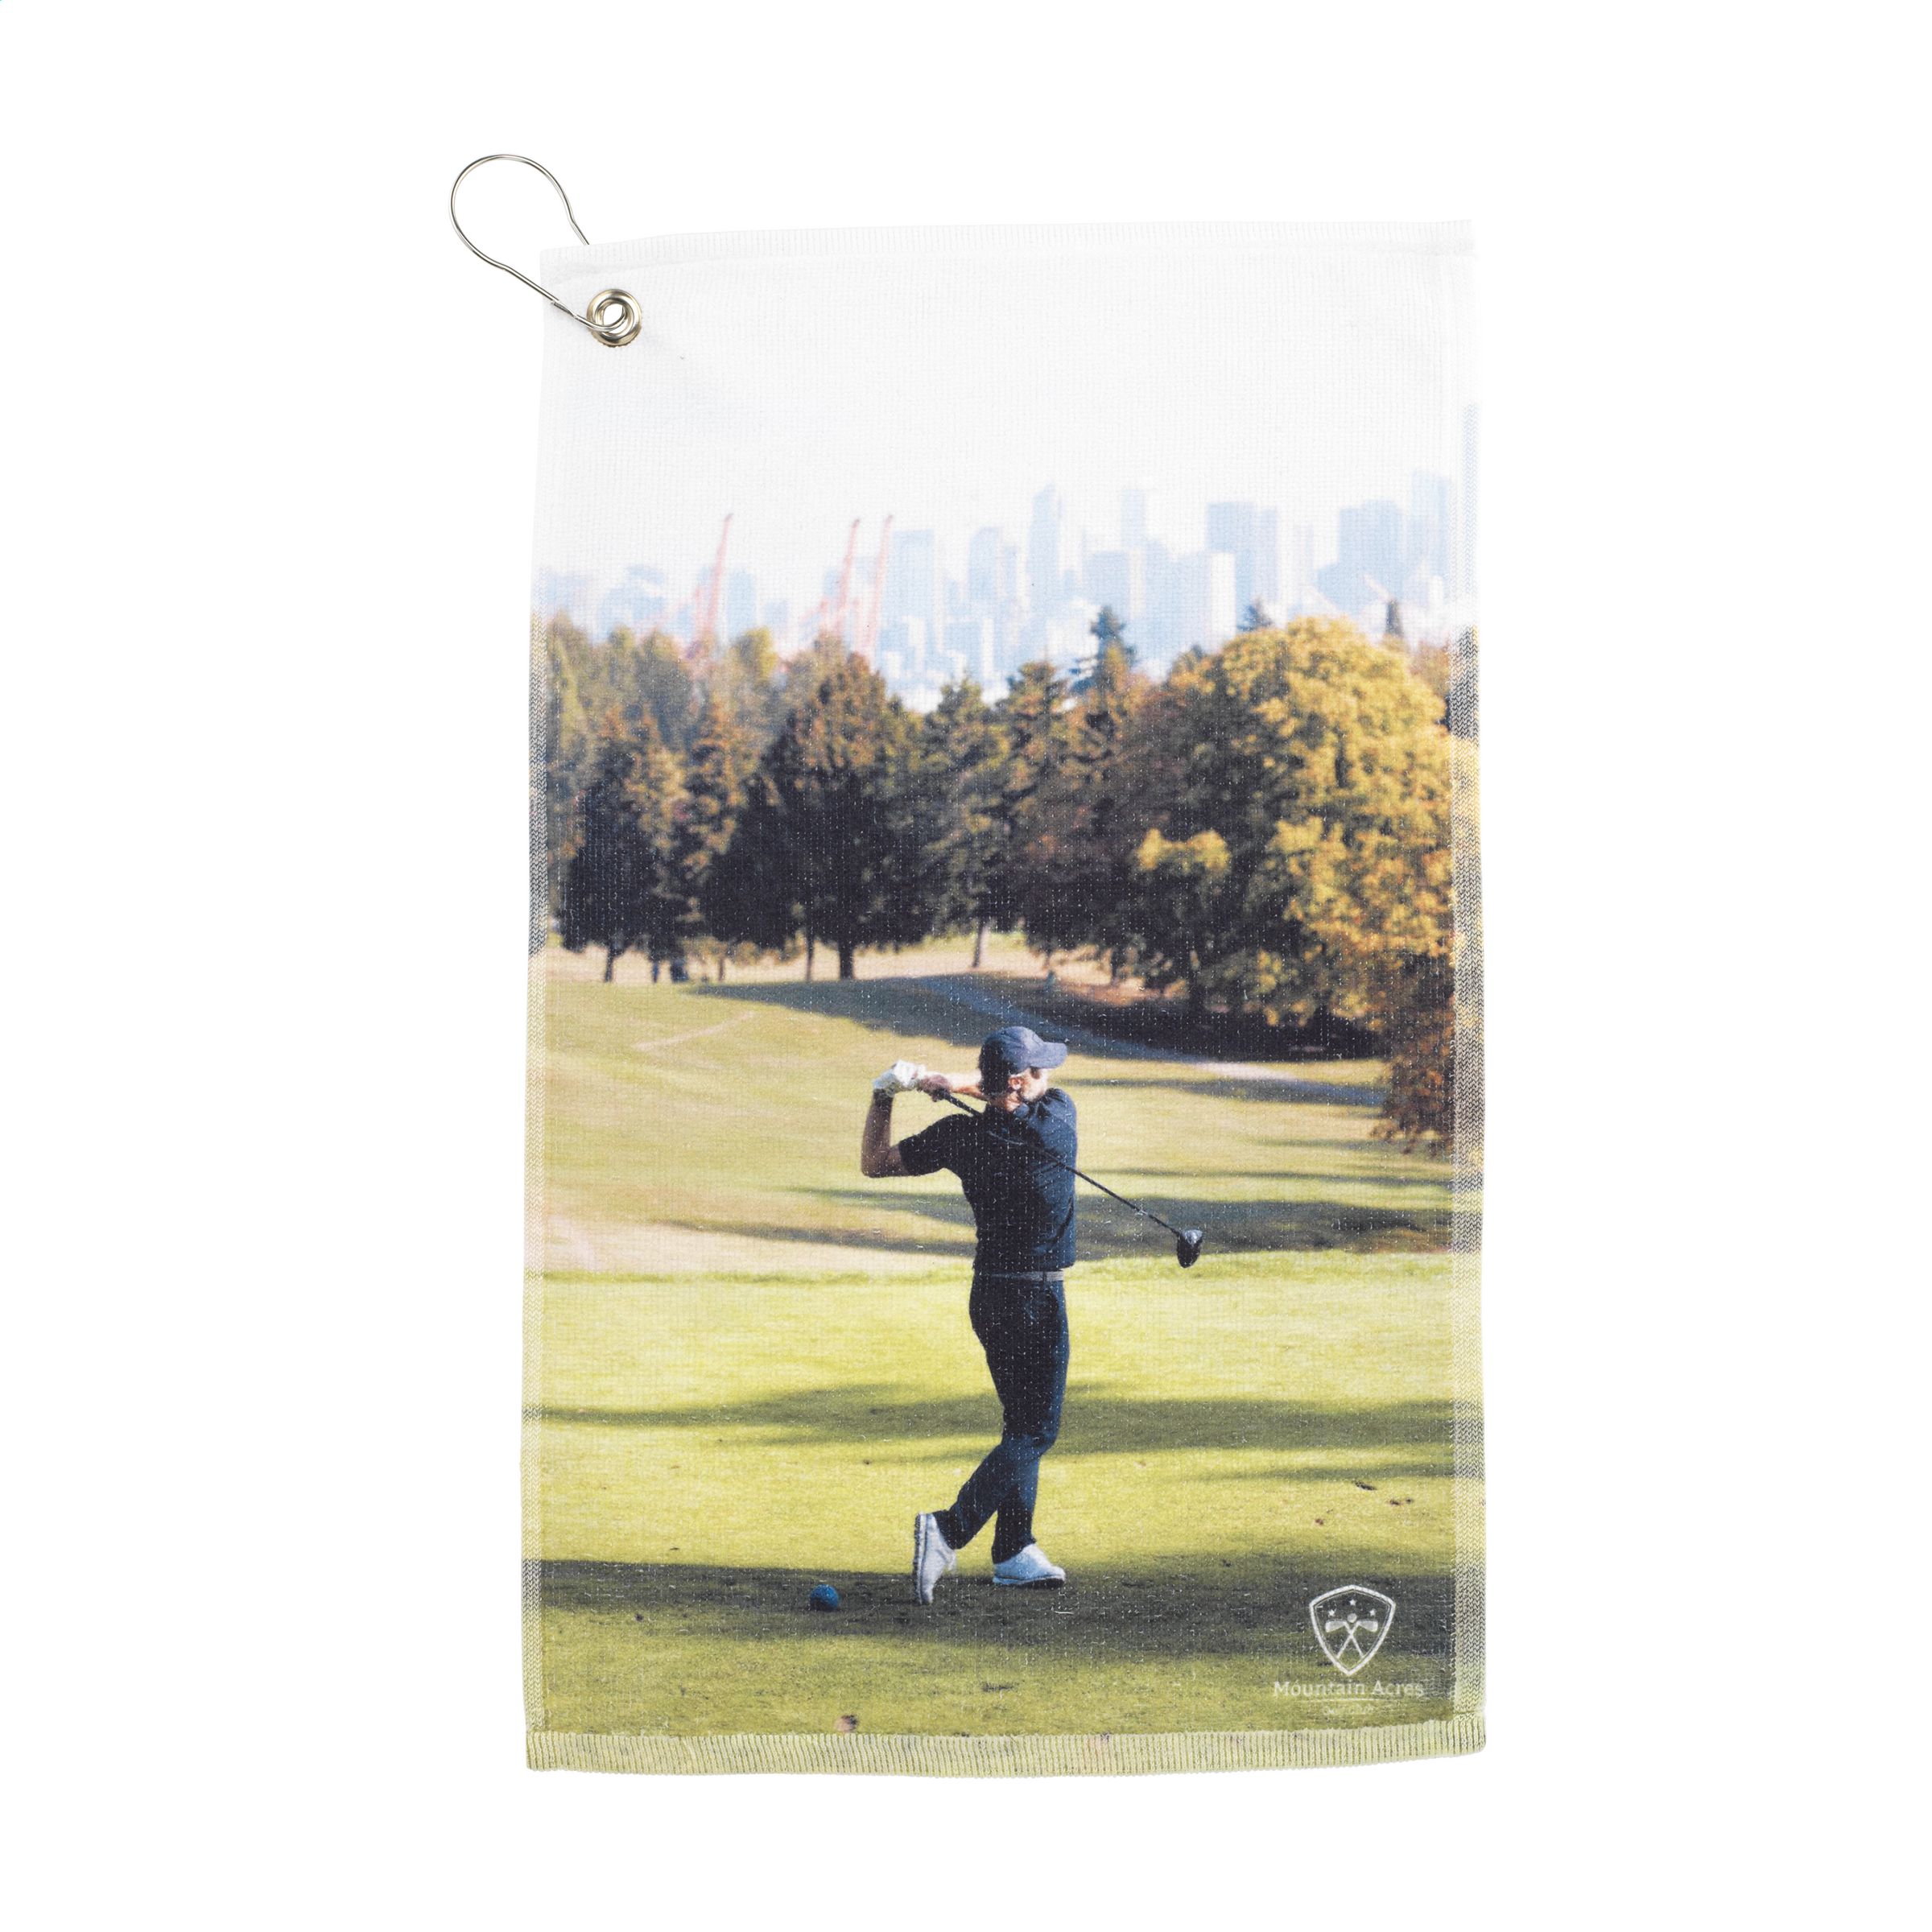 GolfTowel 400 g/m² 30x50 serviette de golf - Zaprinta France